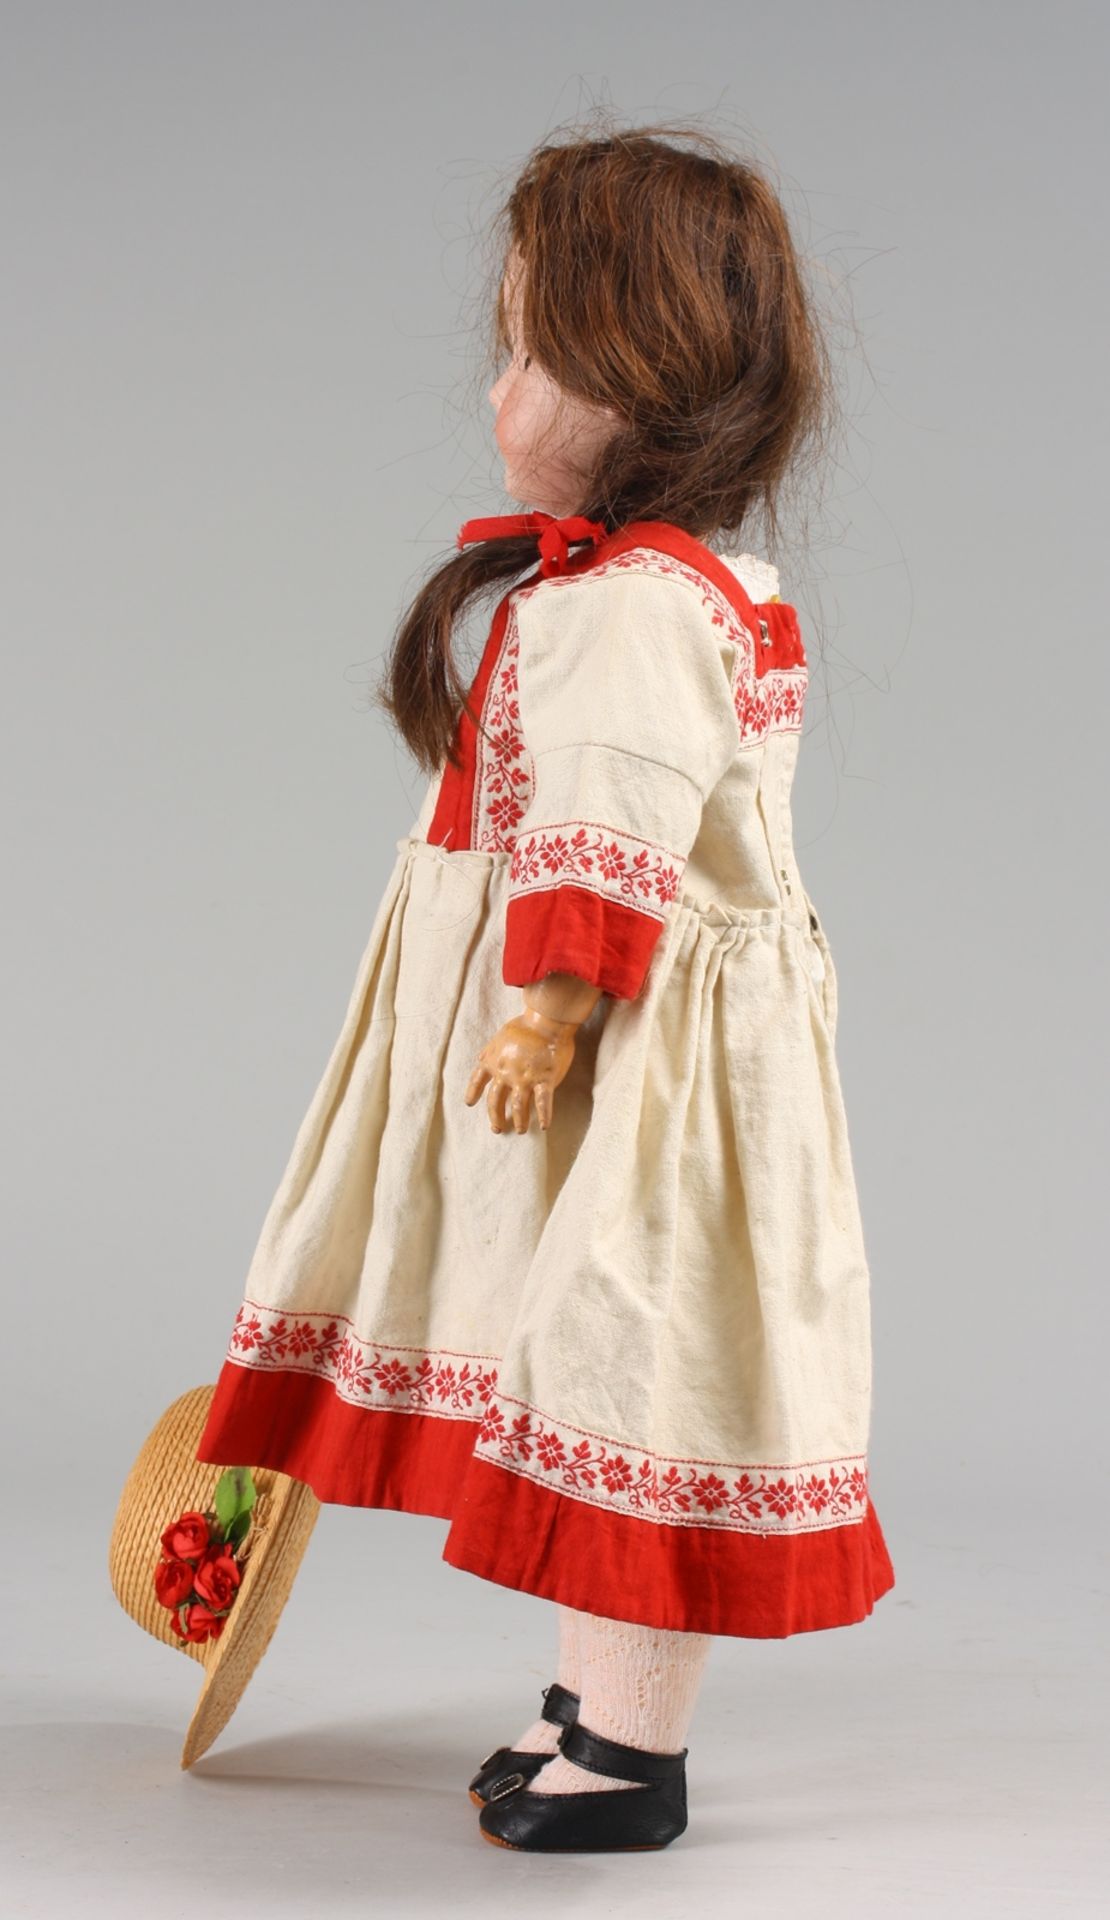 Historisches Porzellankopf-Puppenmädchen - Bild 4 aus 7